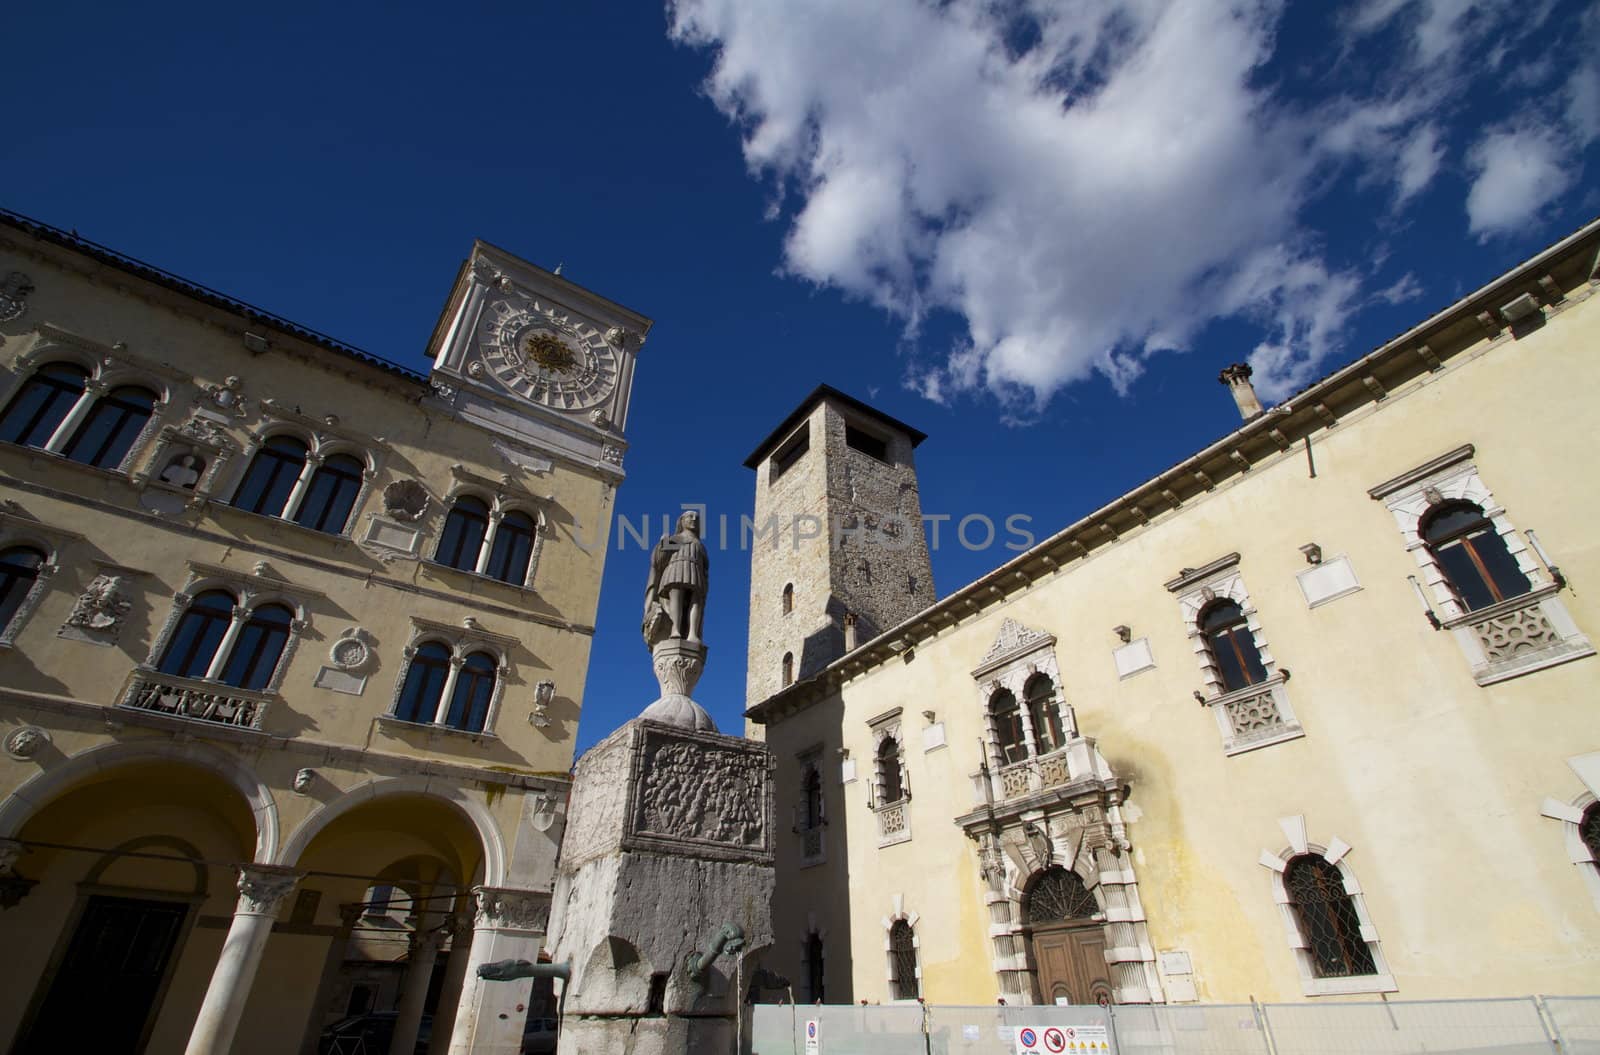 Palazzo dei Rettori and the Torre Civica, important buildings in the Dolomites city of Belluno